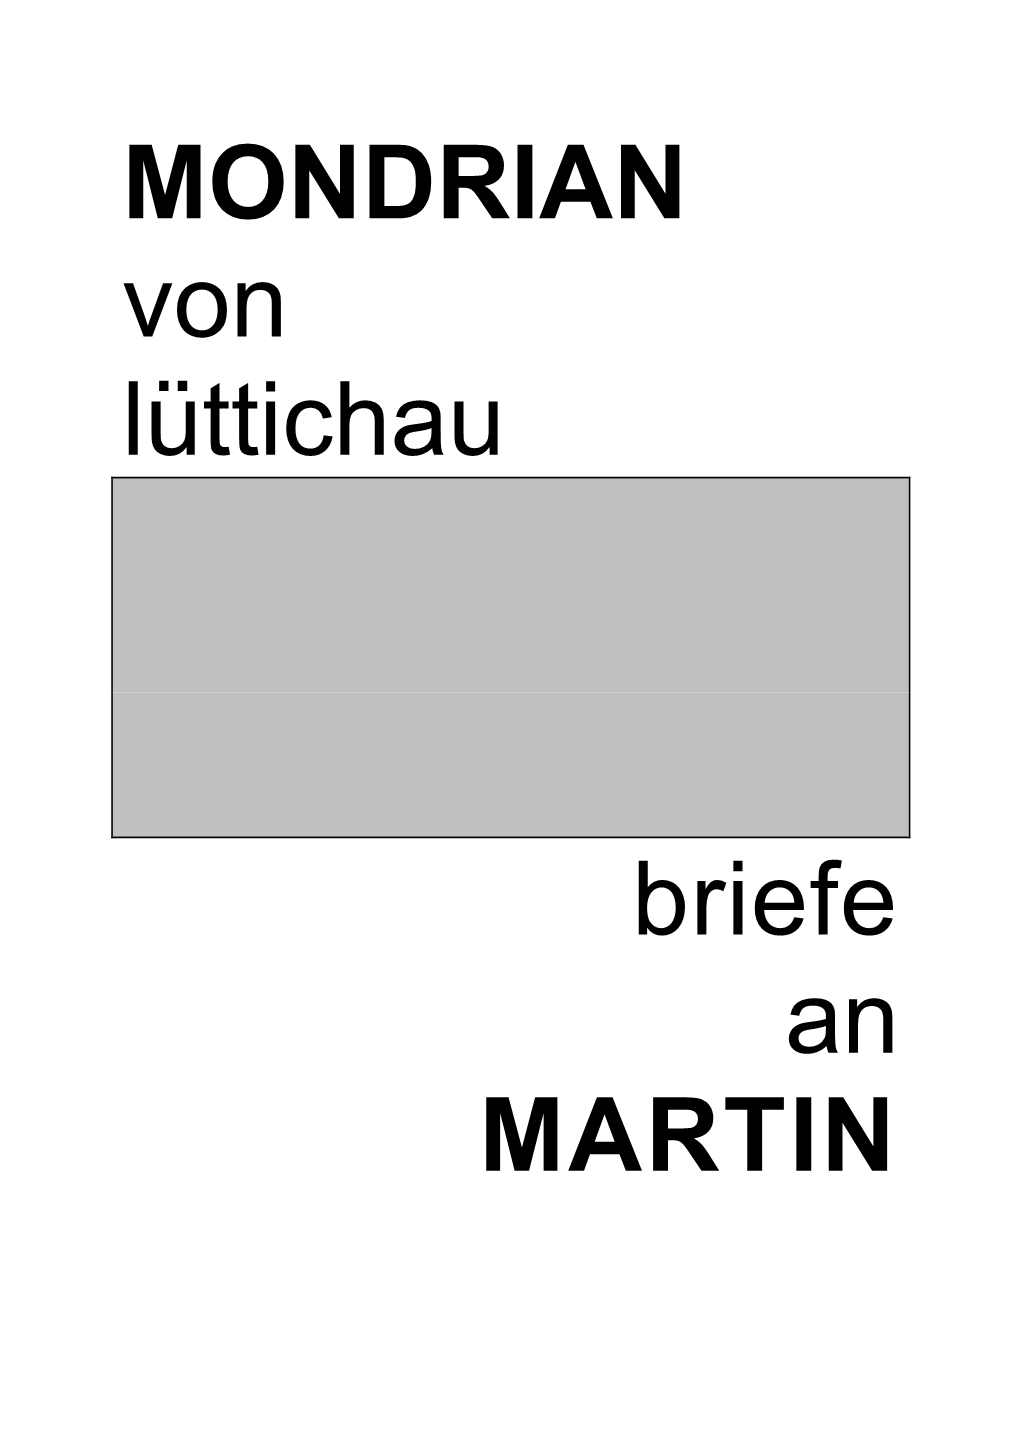 MONDRIAN Von Lüttichau Briefe an MARTIN